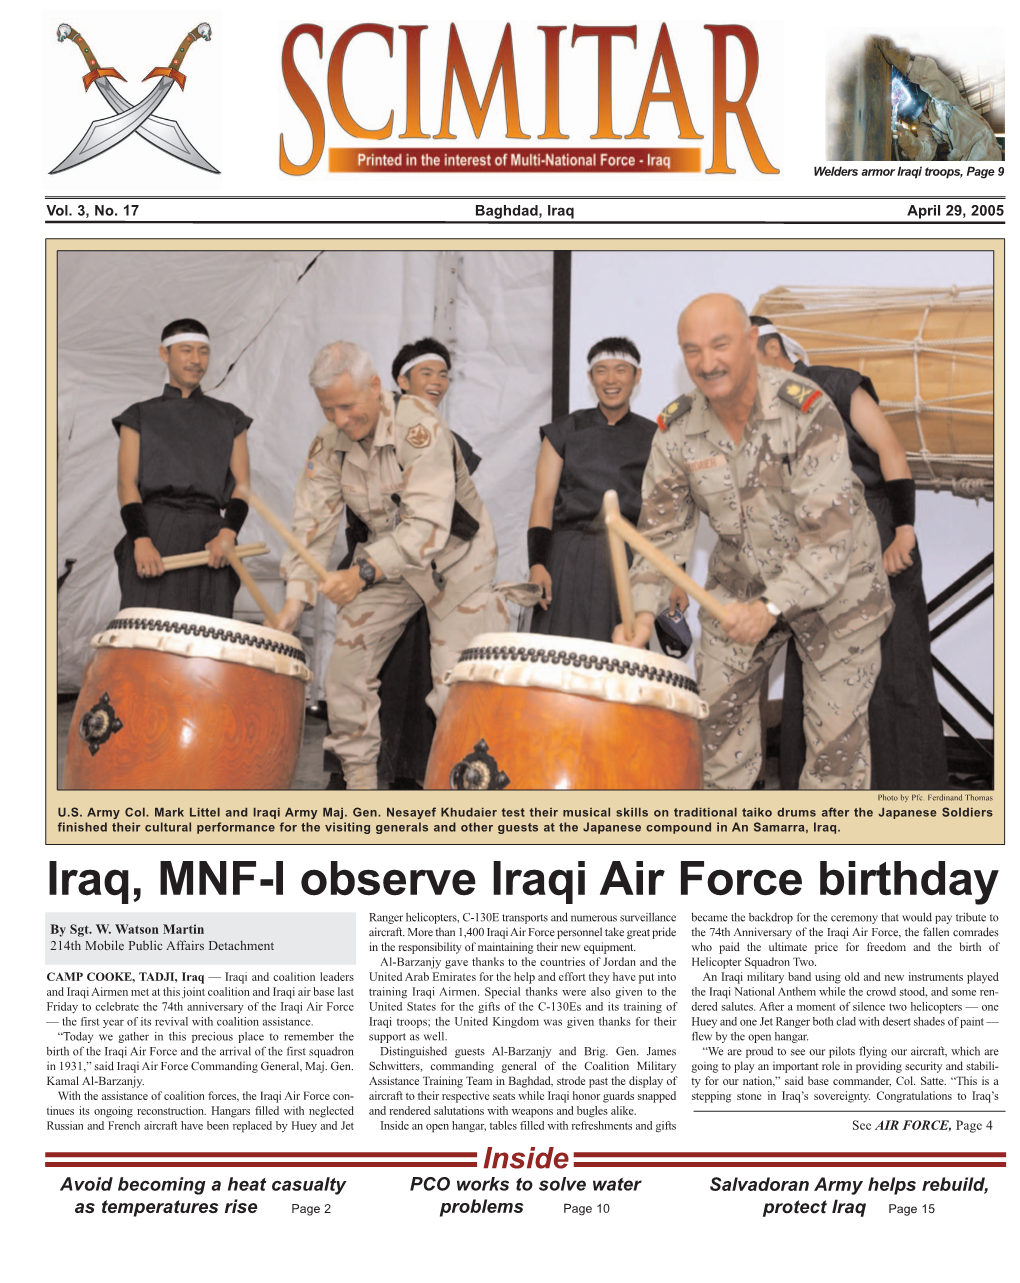 Iraq, MNF-I Observe Iraqi Air Force Birthday